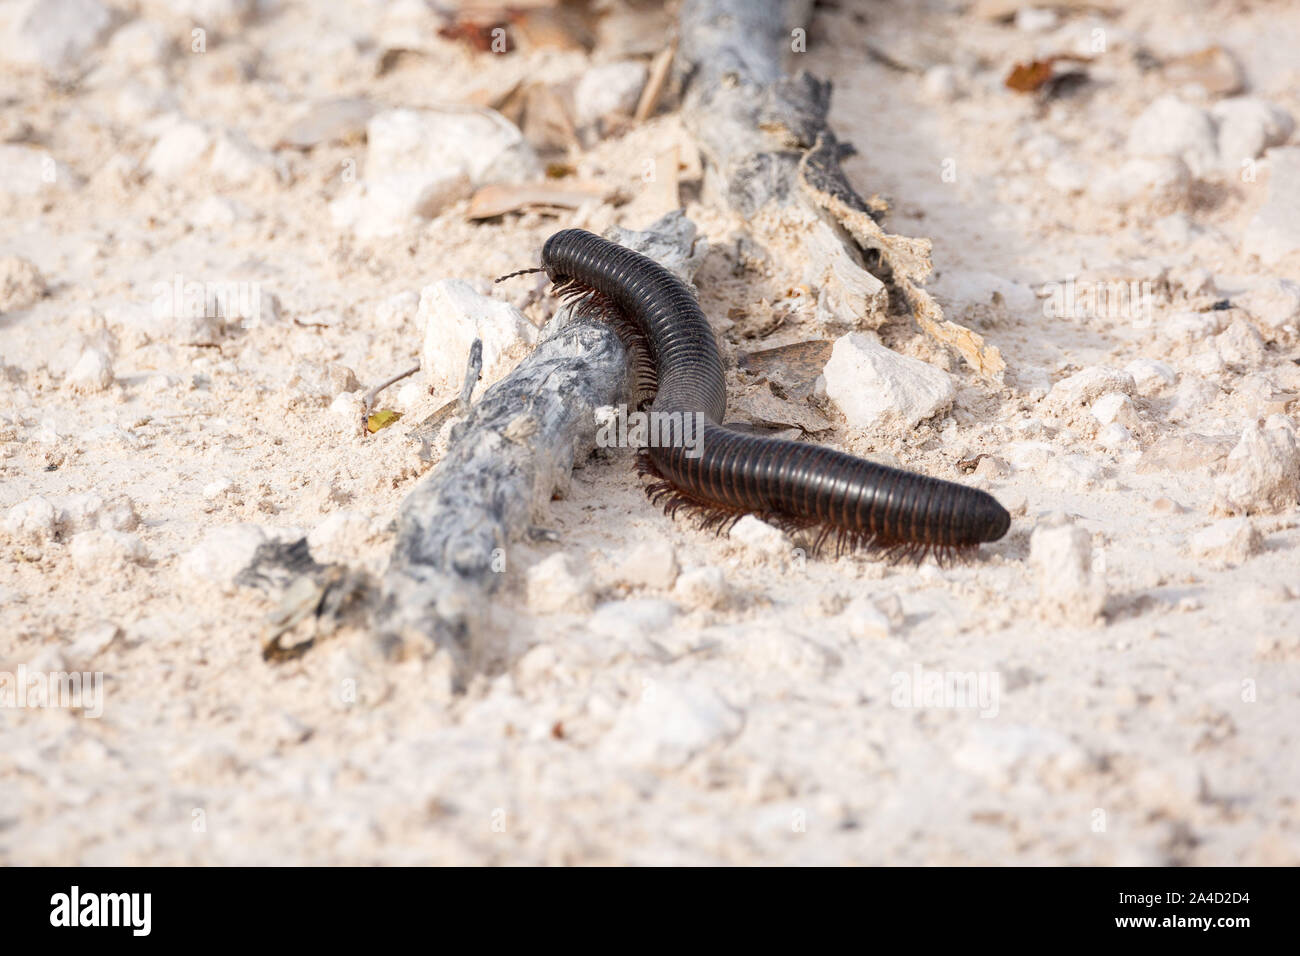 Un centipede (Archispirostreptus gigas) marcher sur le terrain, Etosha, Namibie, Afrique Banque D'Images